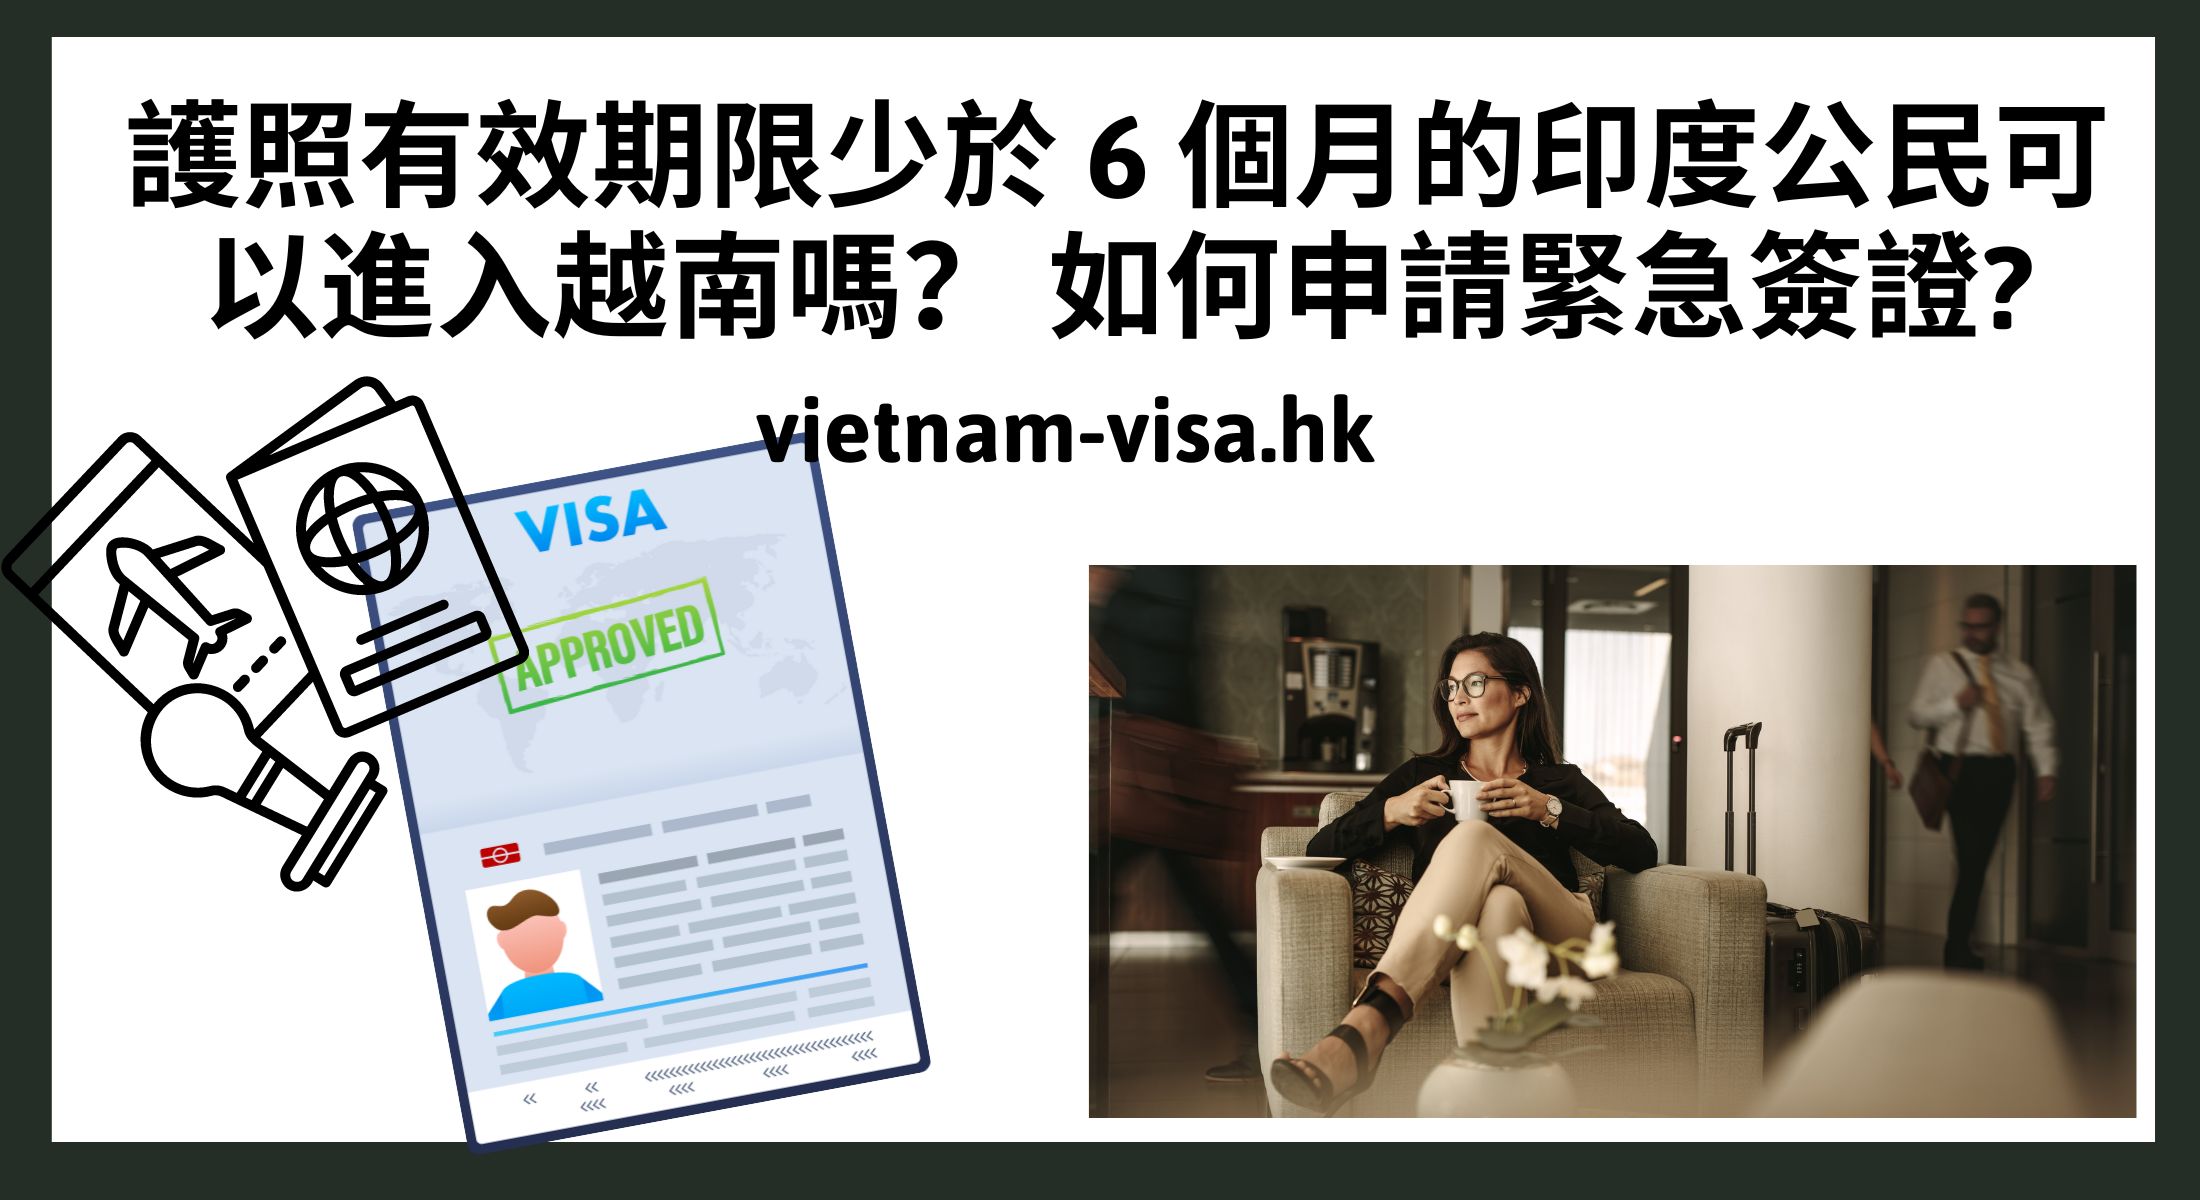 護照有效期限少於 6 個月的印度公民可以進入越南嗎？ 如何申請緊急簽證?